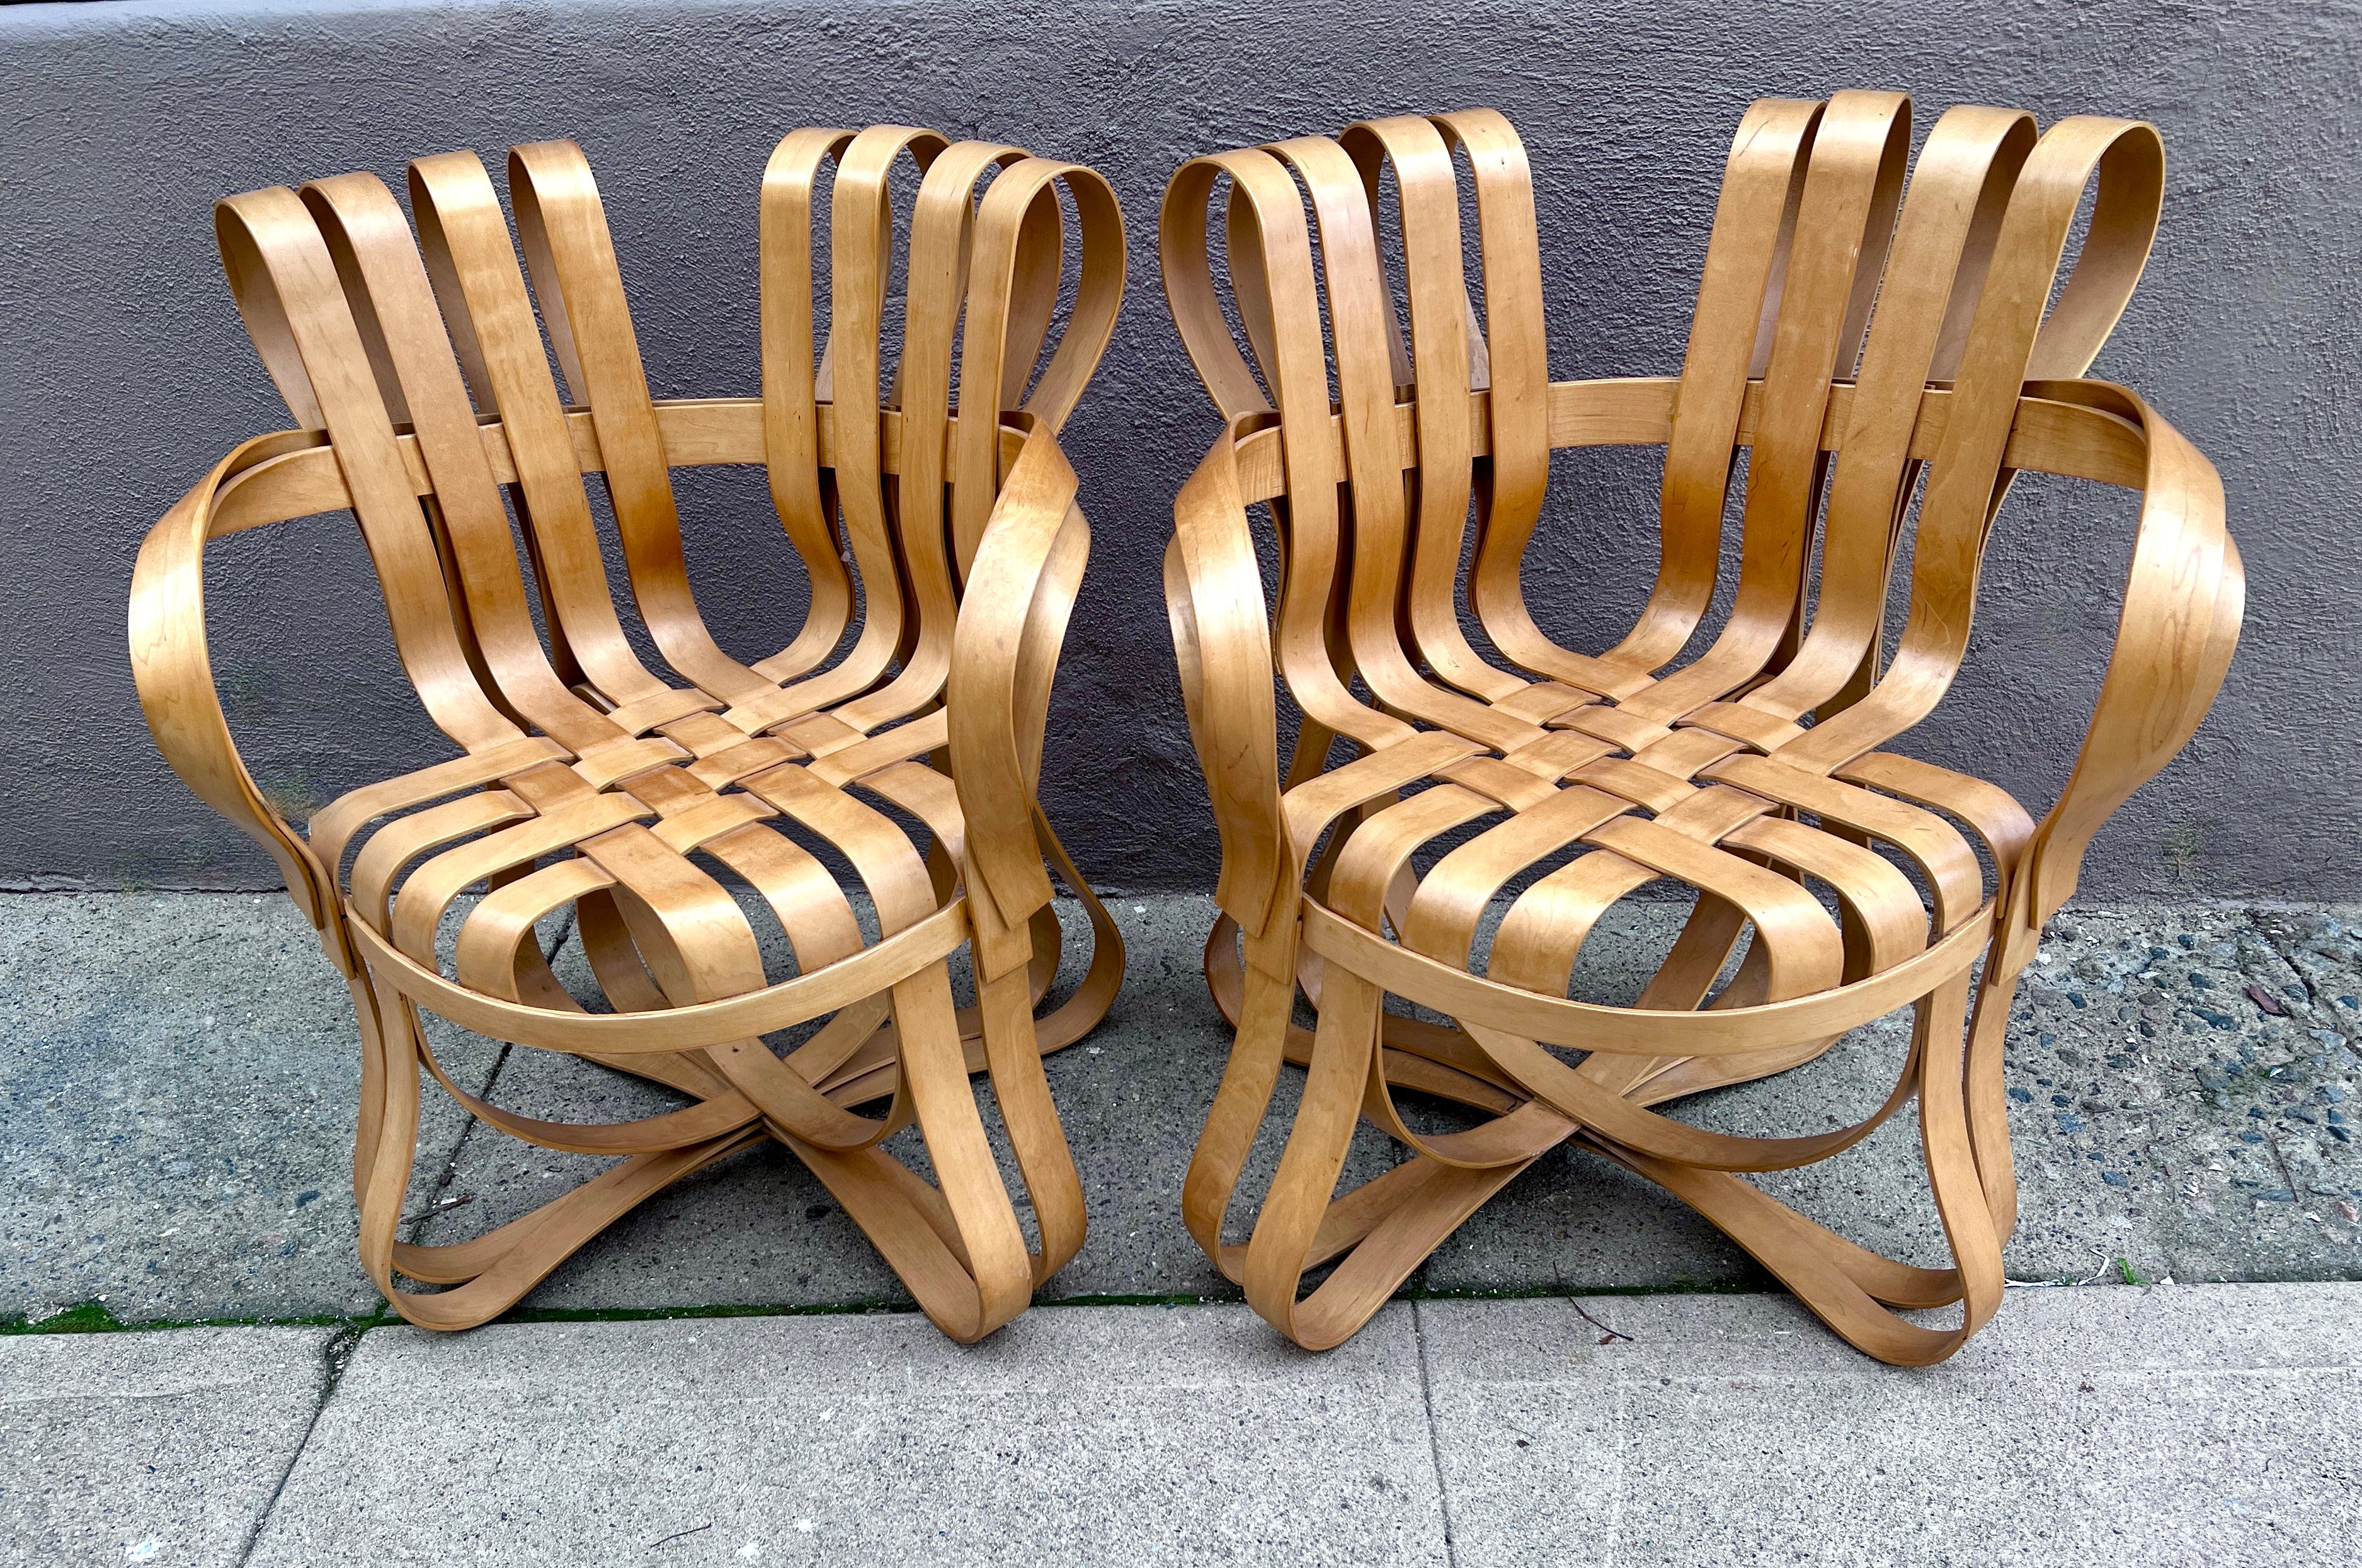 Paire de chaises à carreaux croisés de Frank Gehry.  Les chaises sont fabriquées à partir de morceaux de ruban en bois d'érable, croisés et pliés pour former non seulement un design unique, mais aussi une pièce solide pour n'importe quelle pièce de